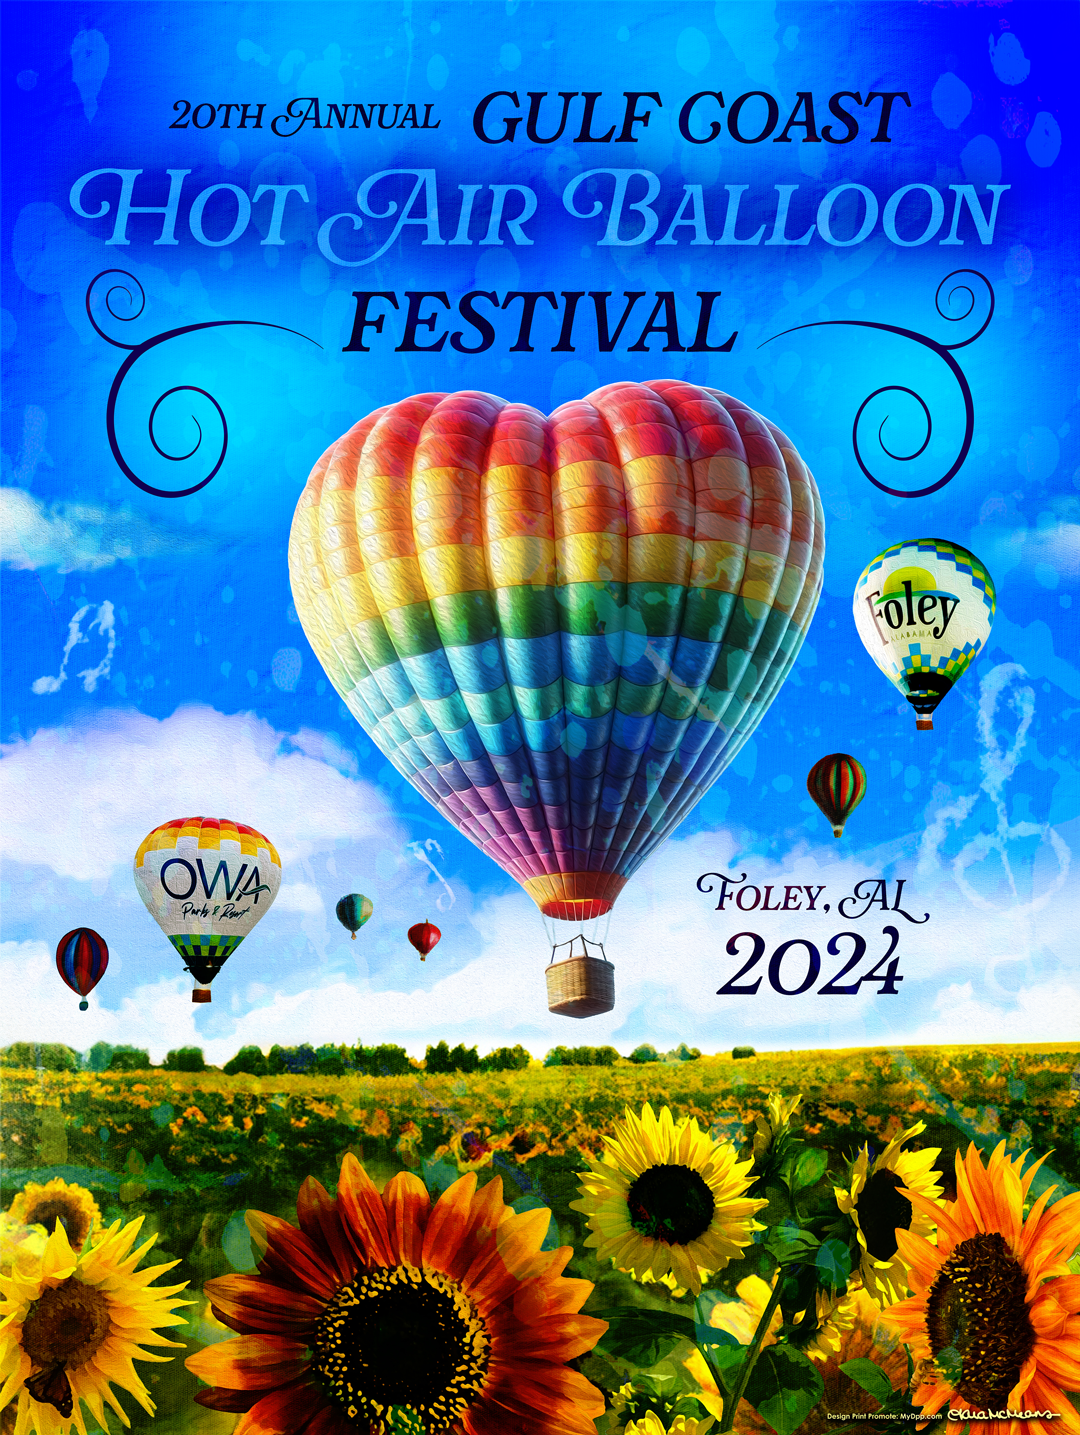 20th Annual Gulf Coast Hot Air Balloon Festival Official Poster Design
Artist - Tara McMeans